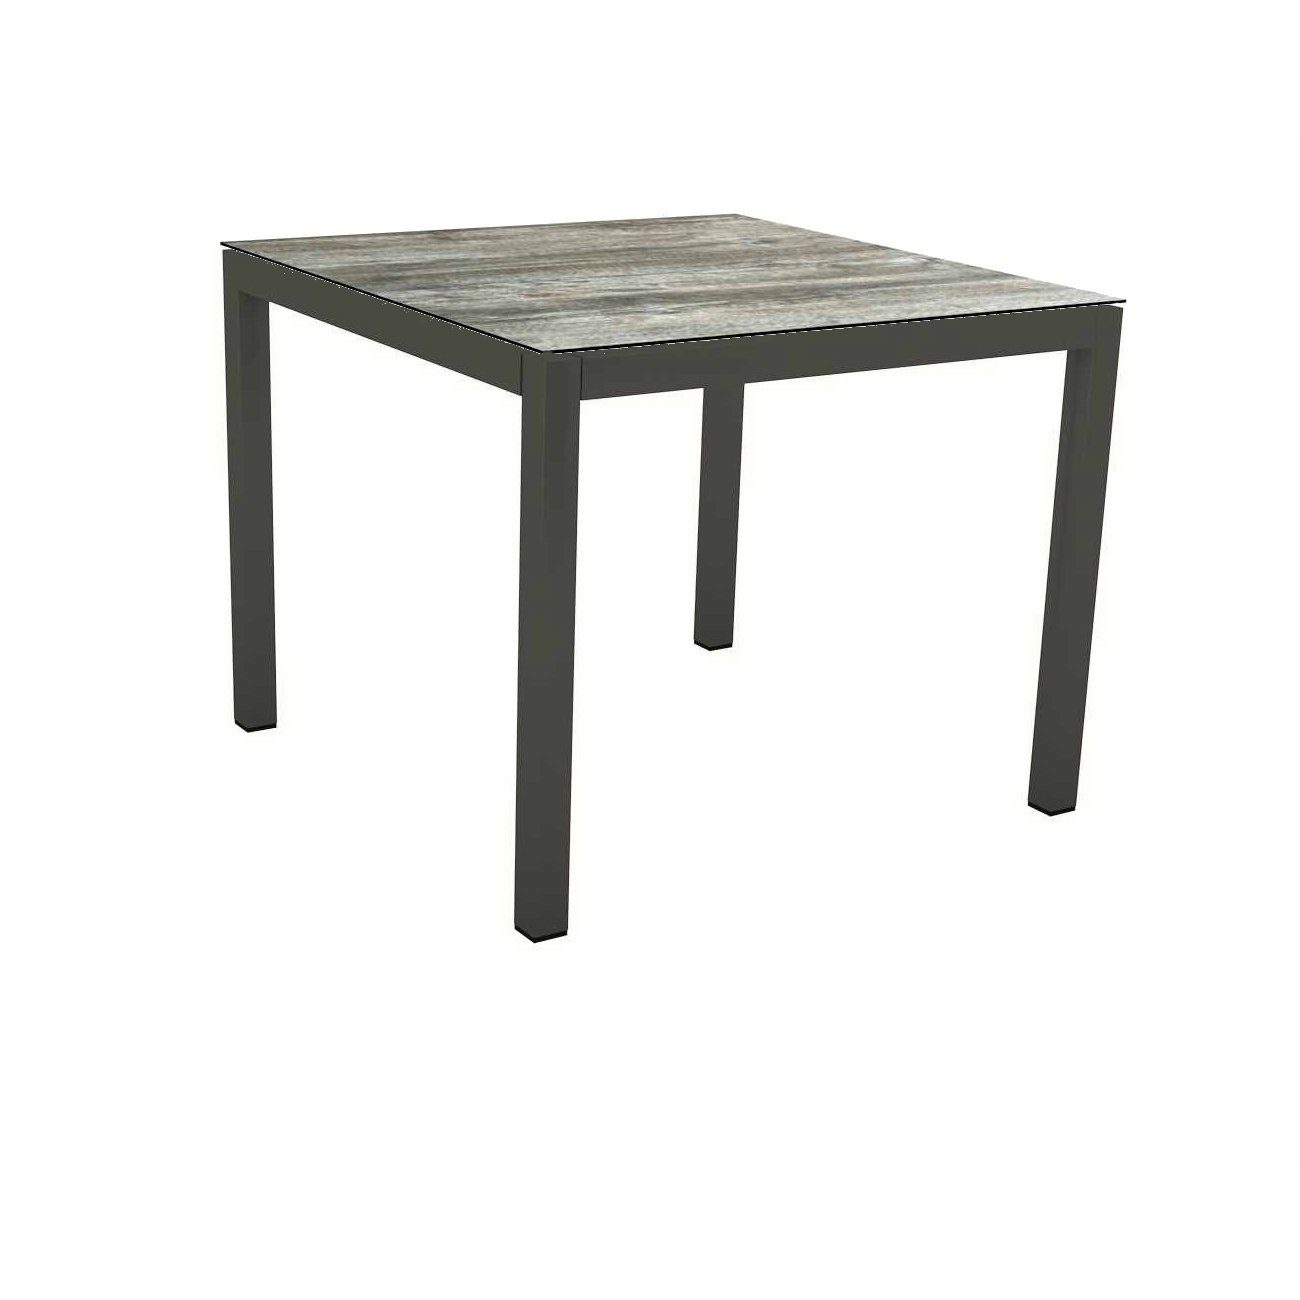 Stern Tischsystem Gartentisch, Gestell Aluminium anthrazit, Tischplatte HPL Tundra grau, Maße: 90x90 cm